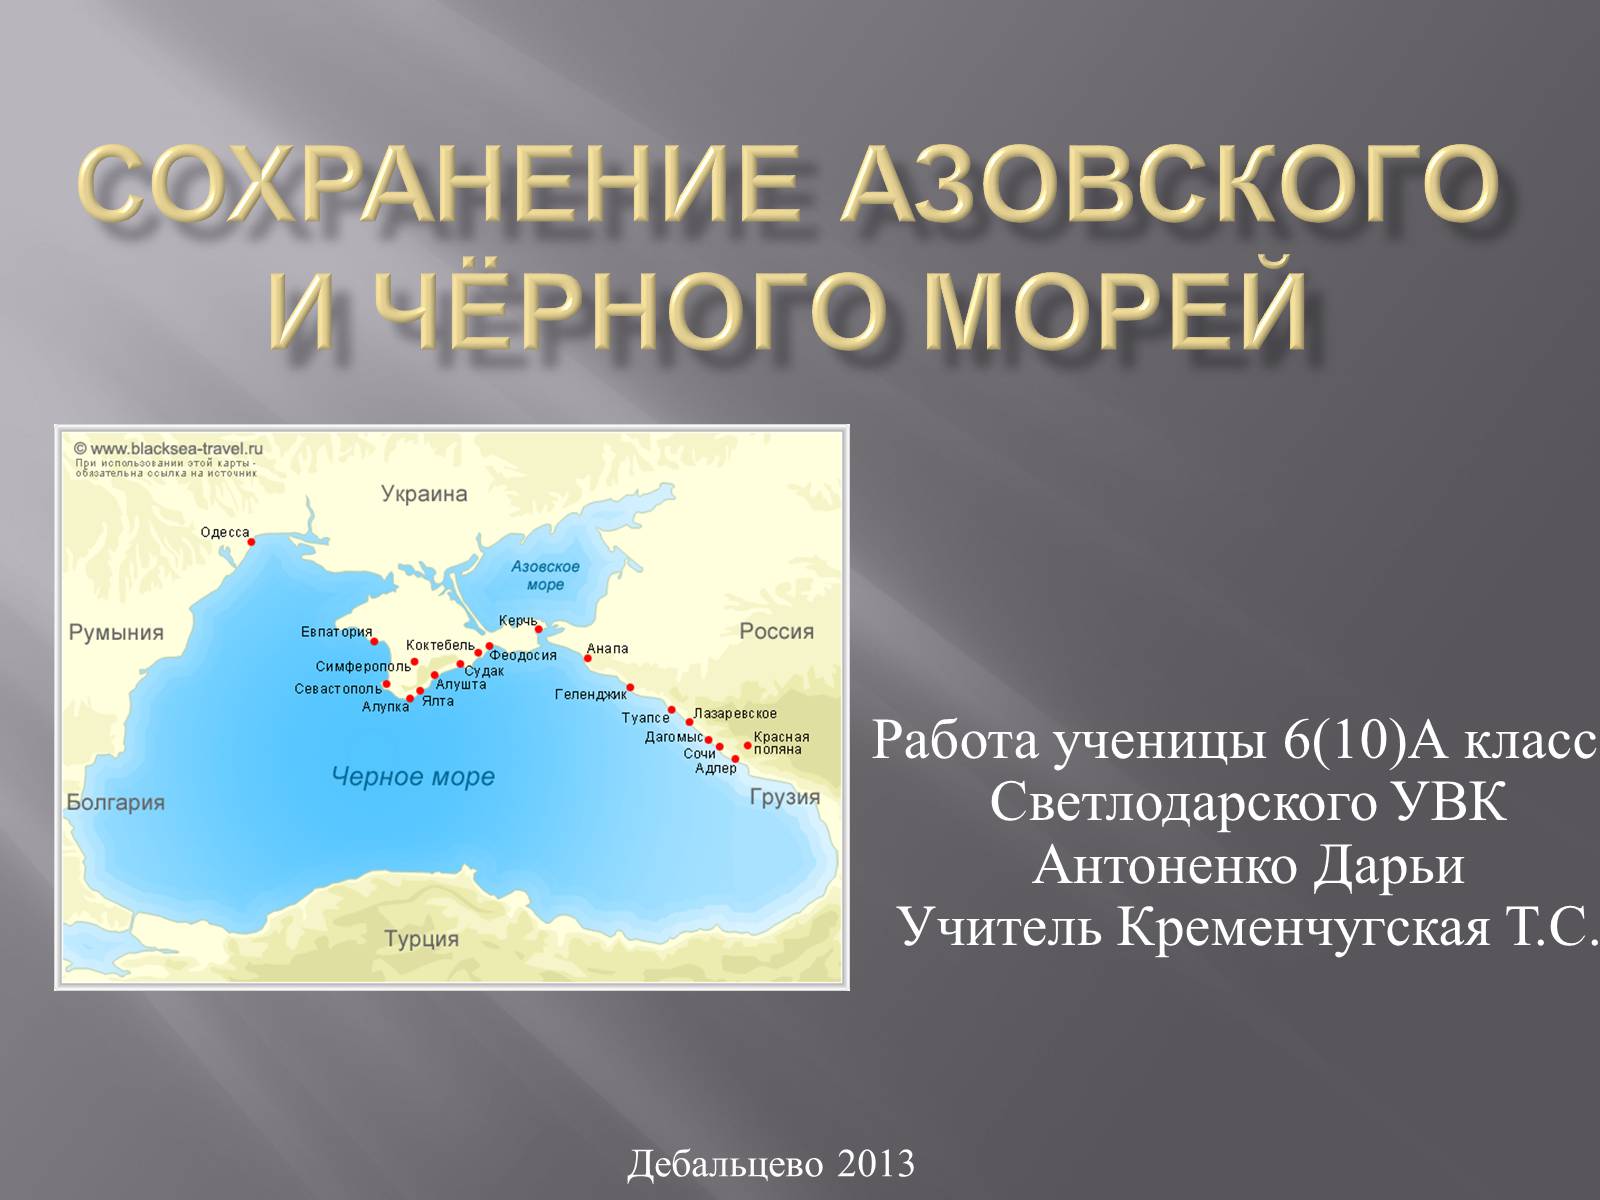 Сохранение Азовского моря